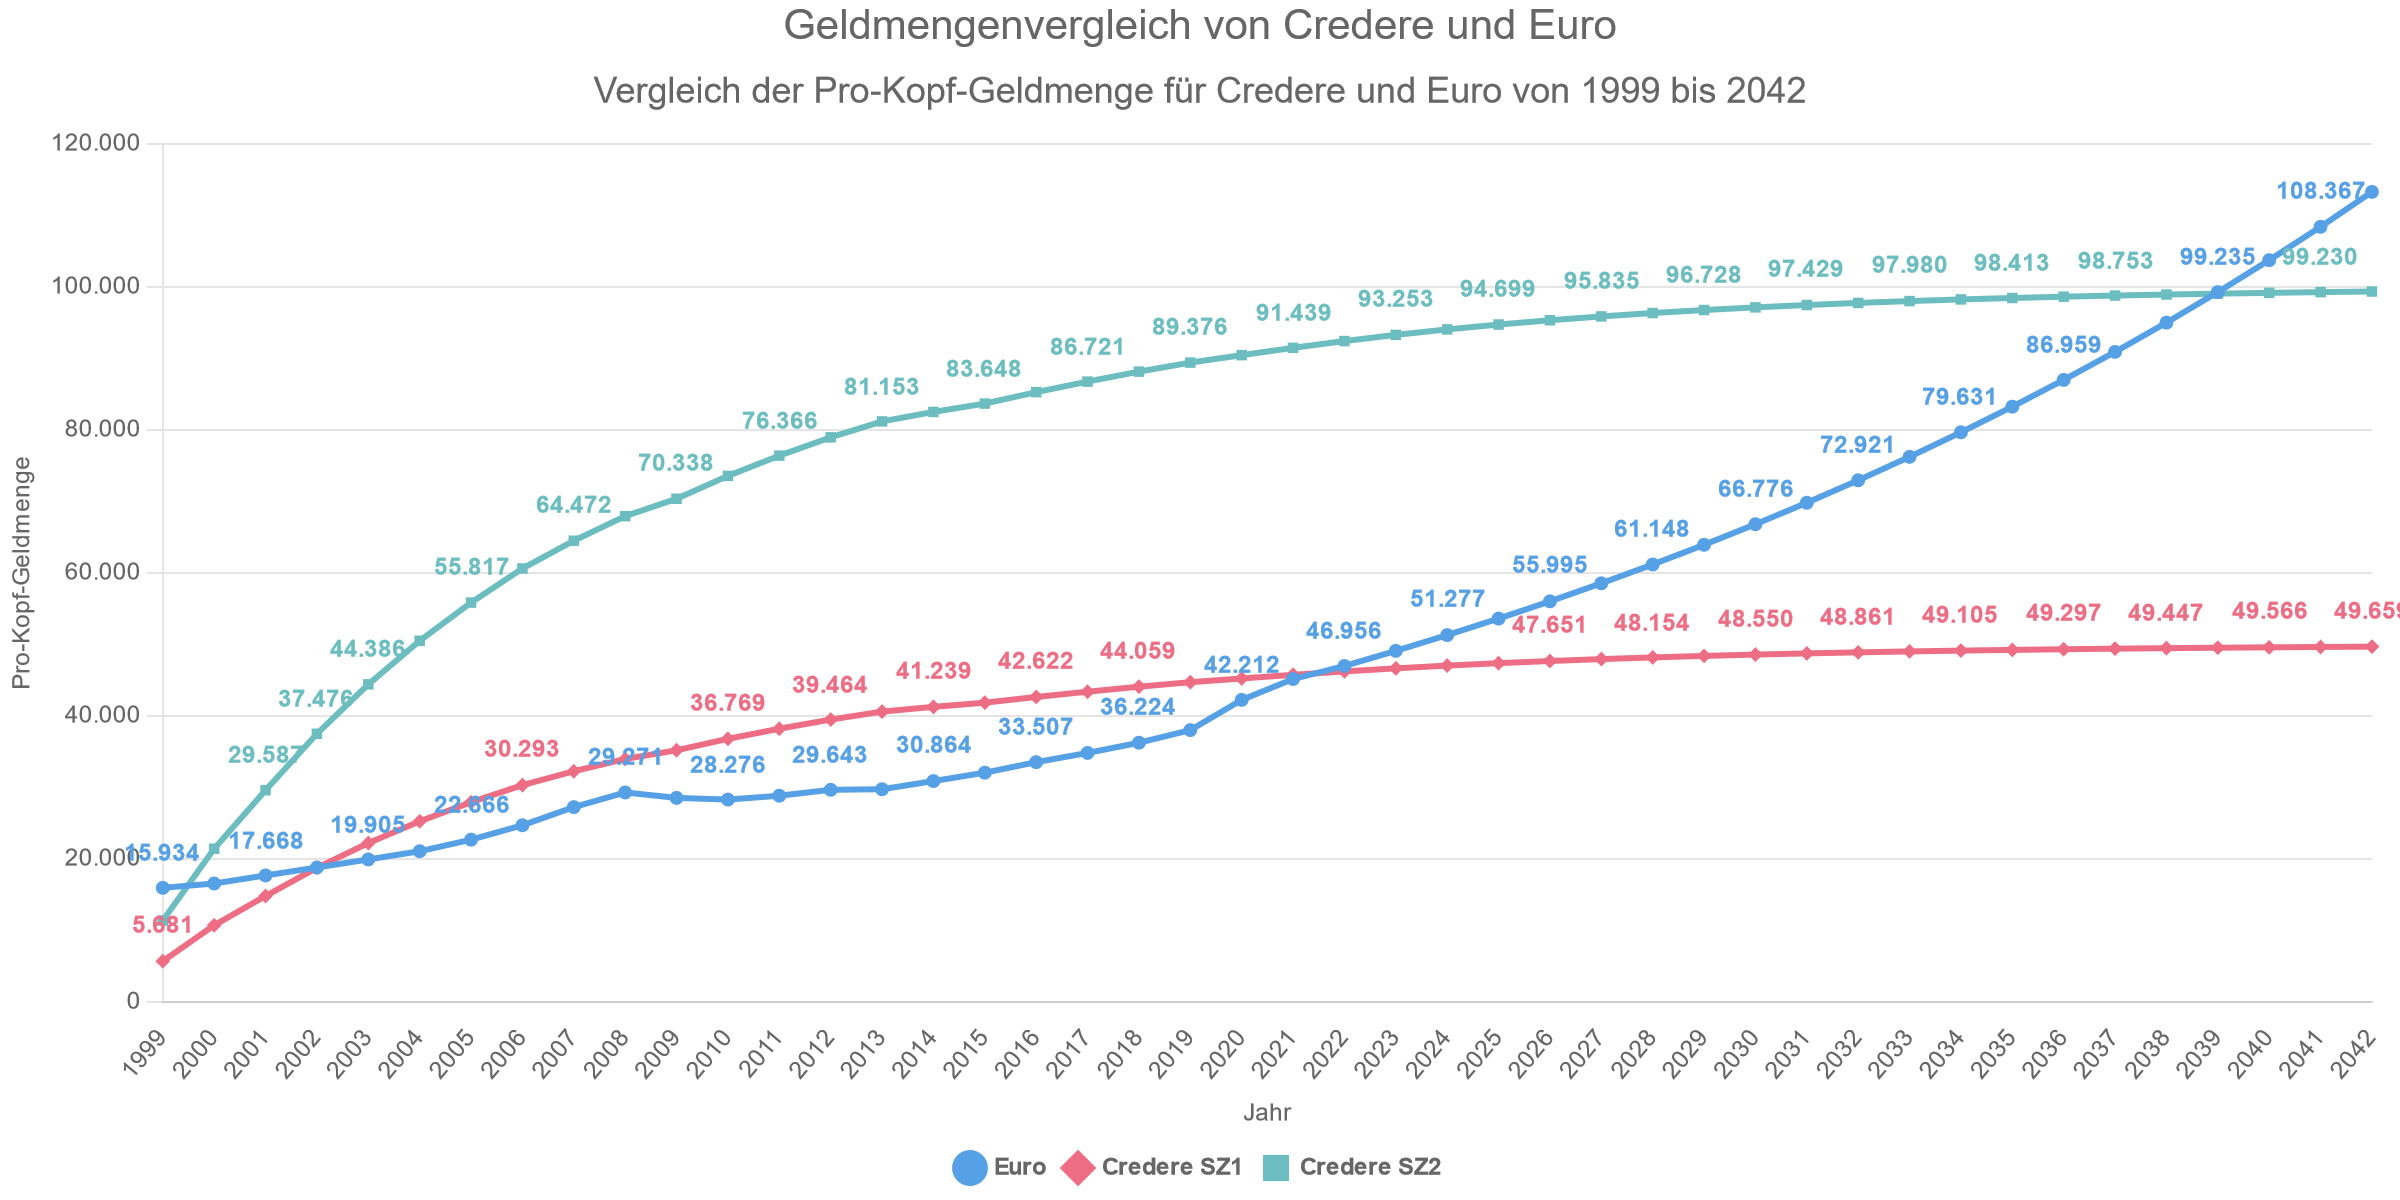 Geldmengenvergleich von Credere und Euro